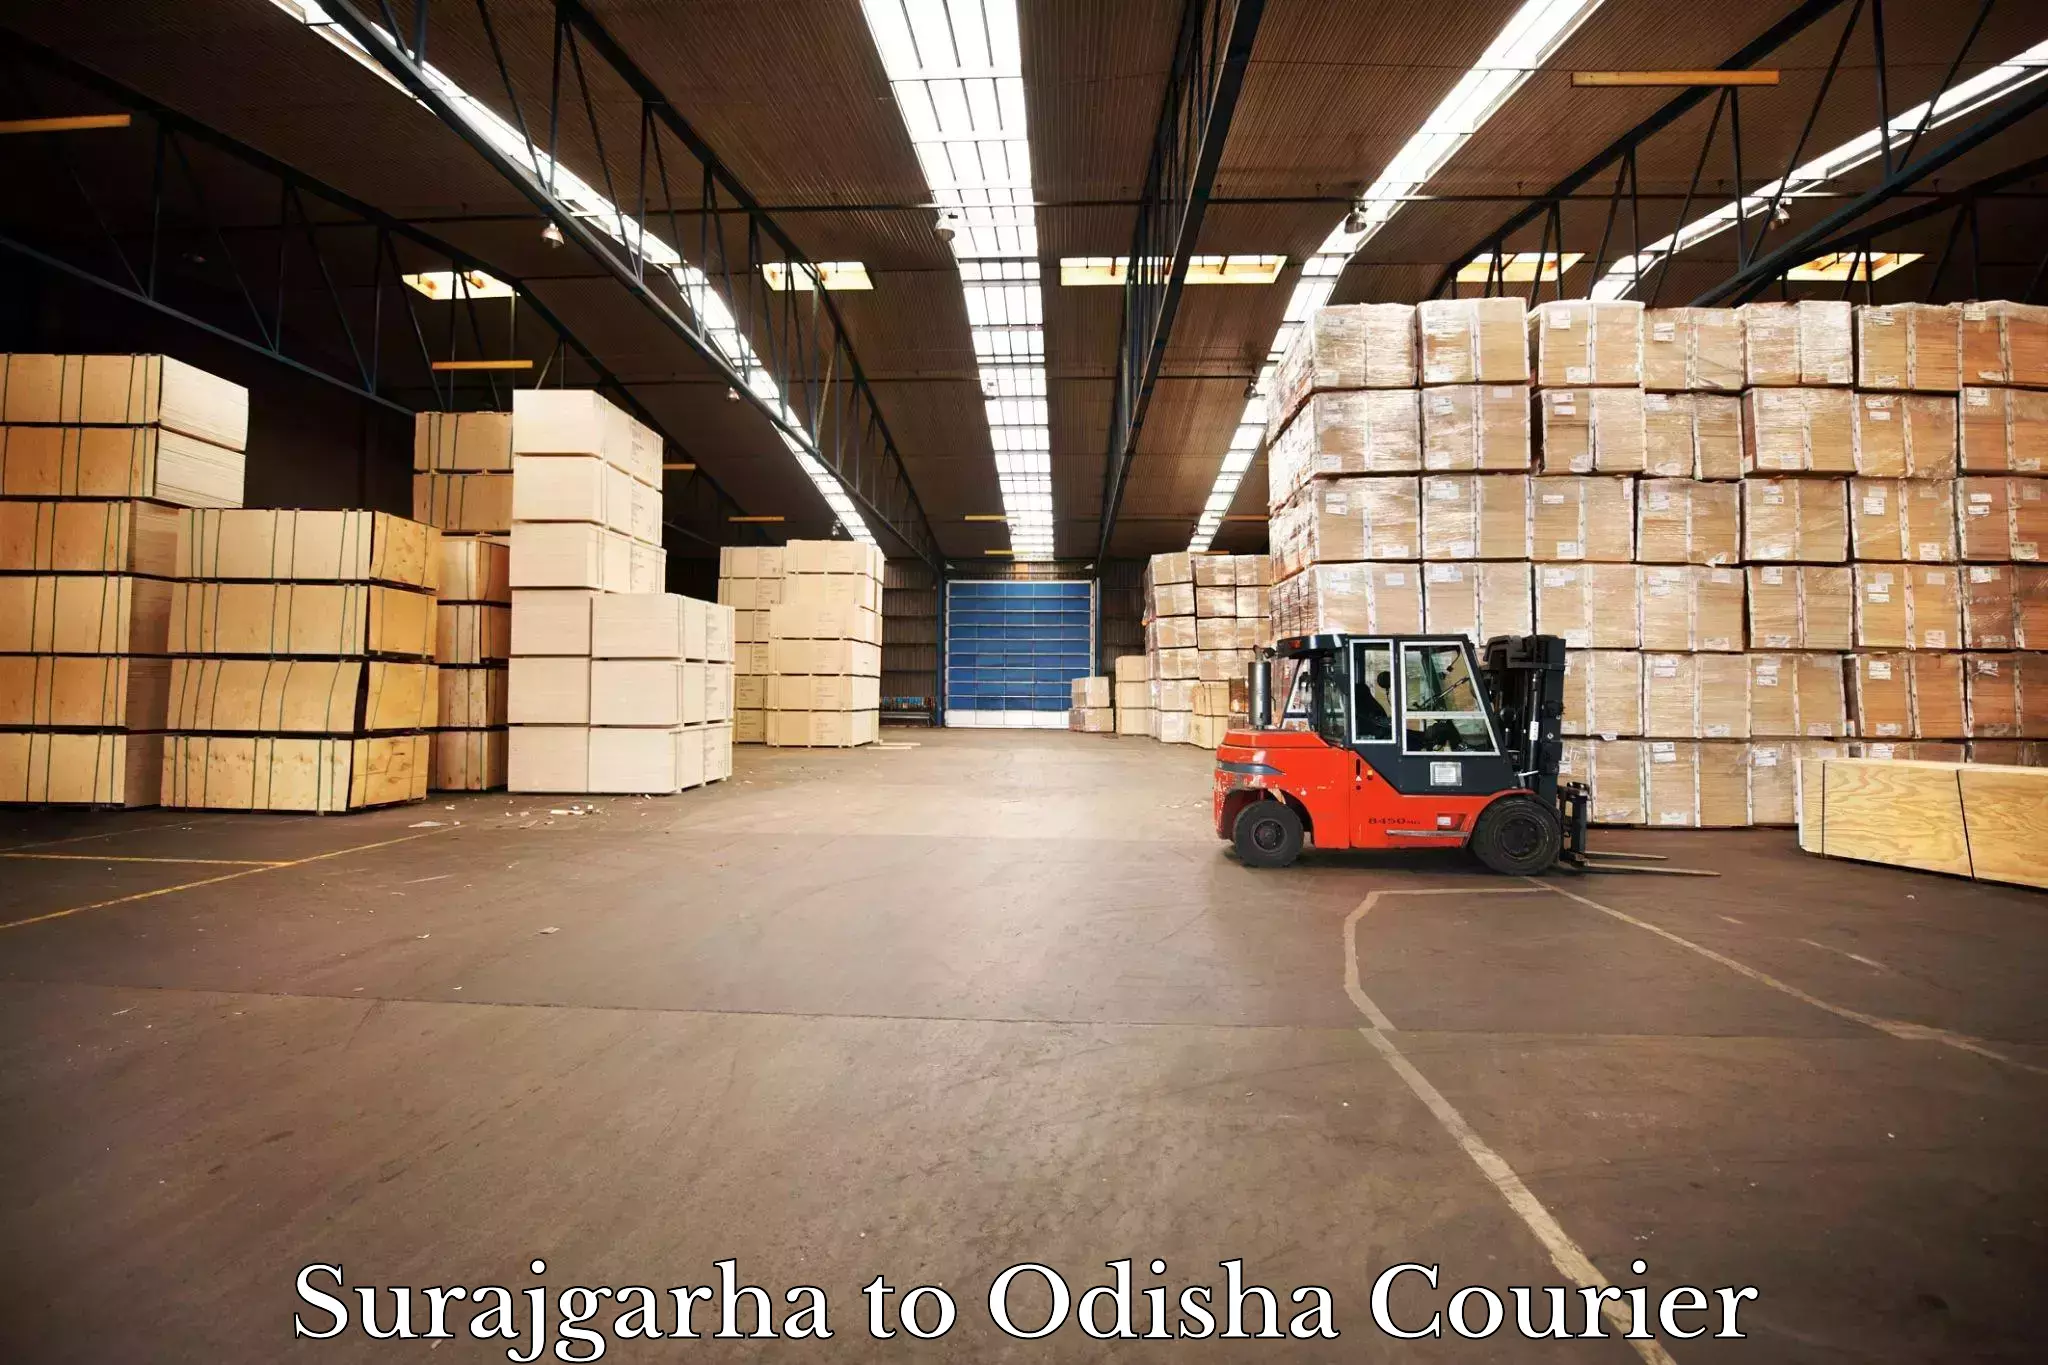 Round-the-clock parcel delivery Surajgarha to Joda